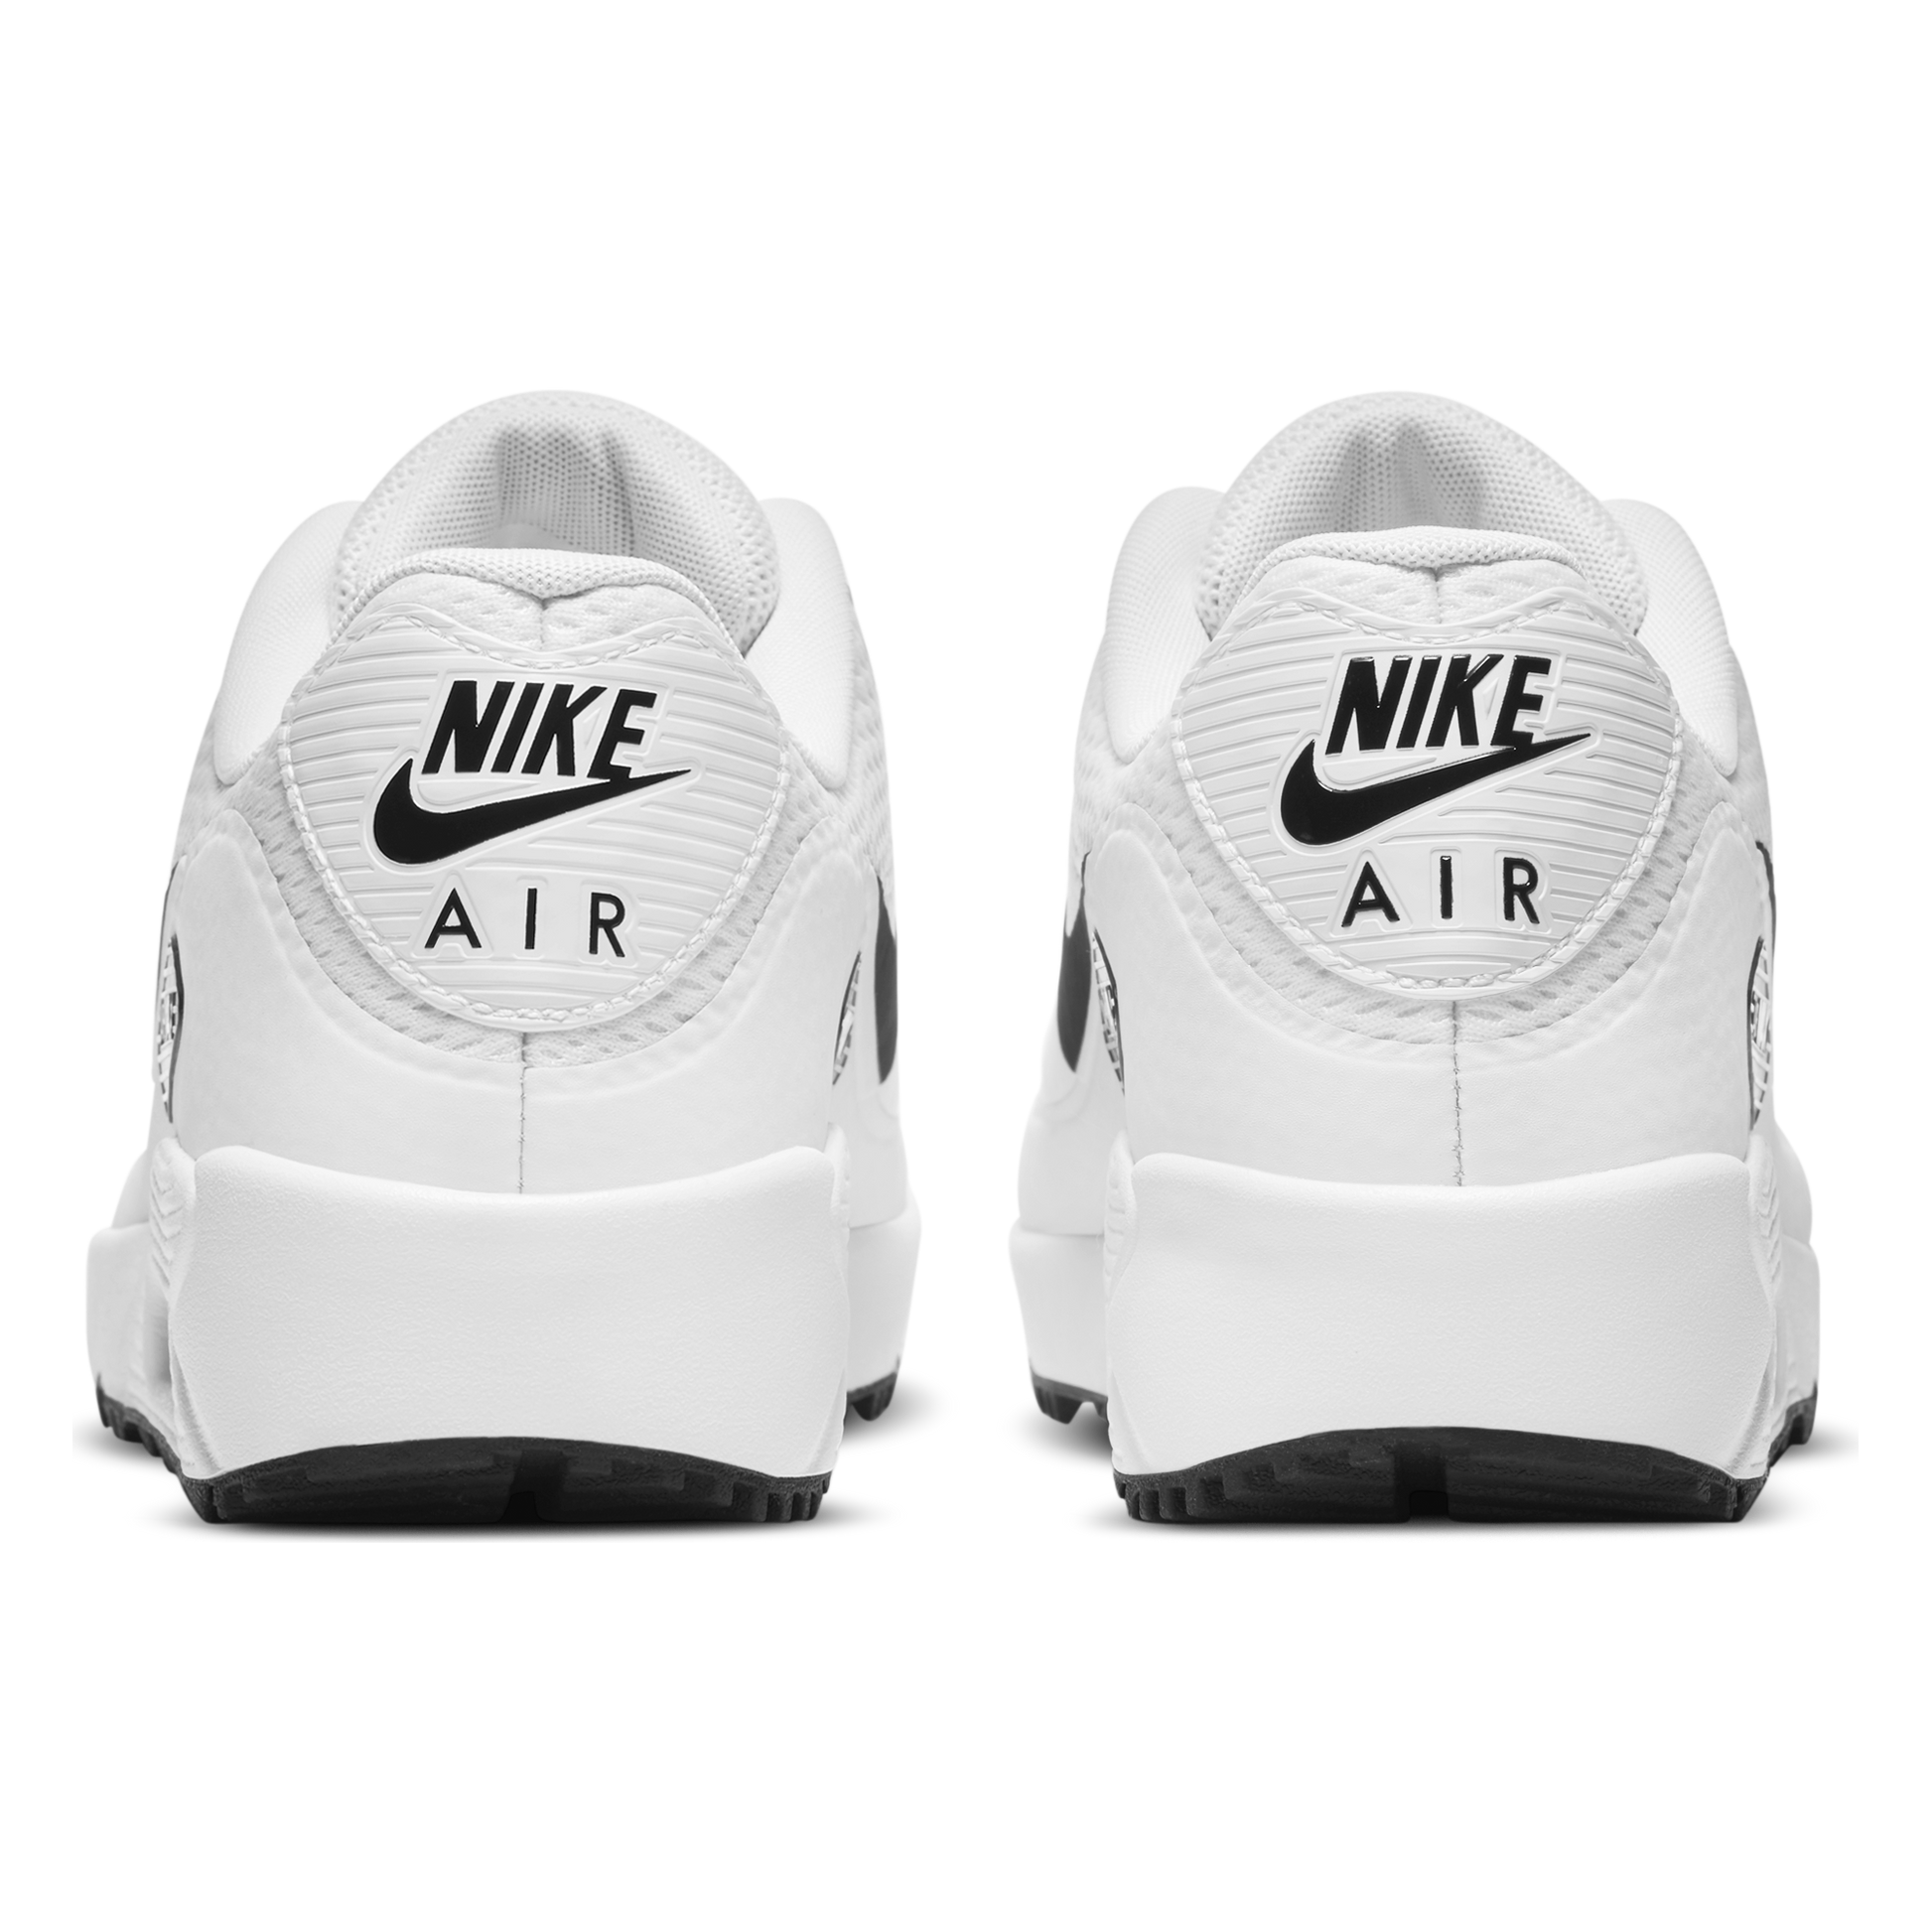 Nike Air Max 90 G (White) - Desirable Golf